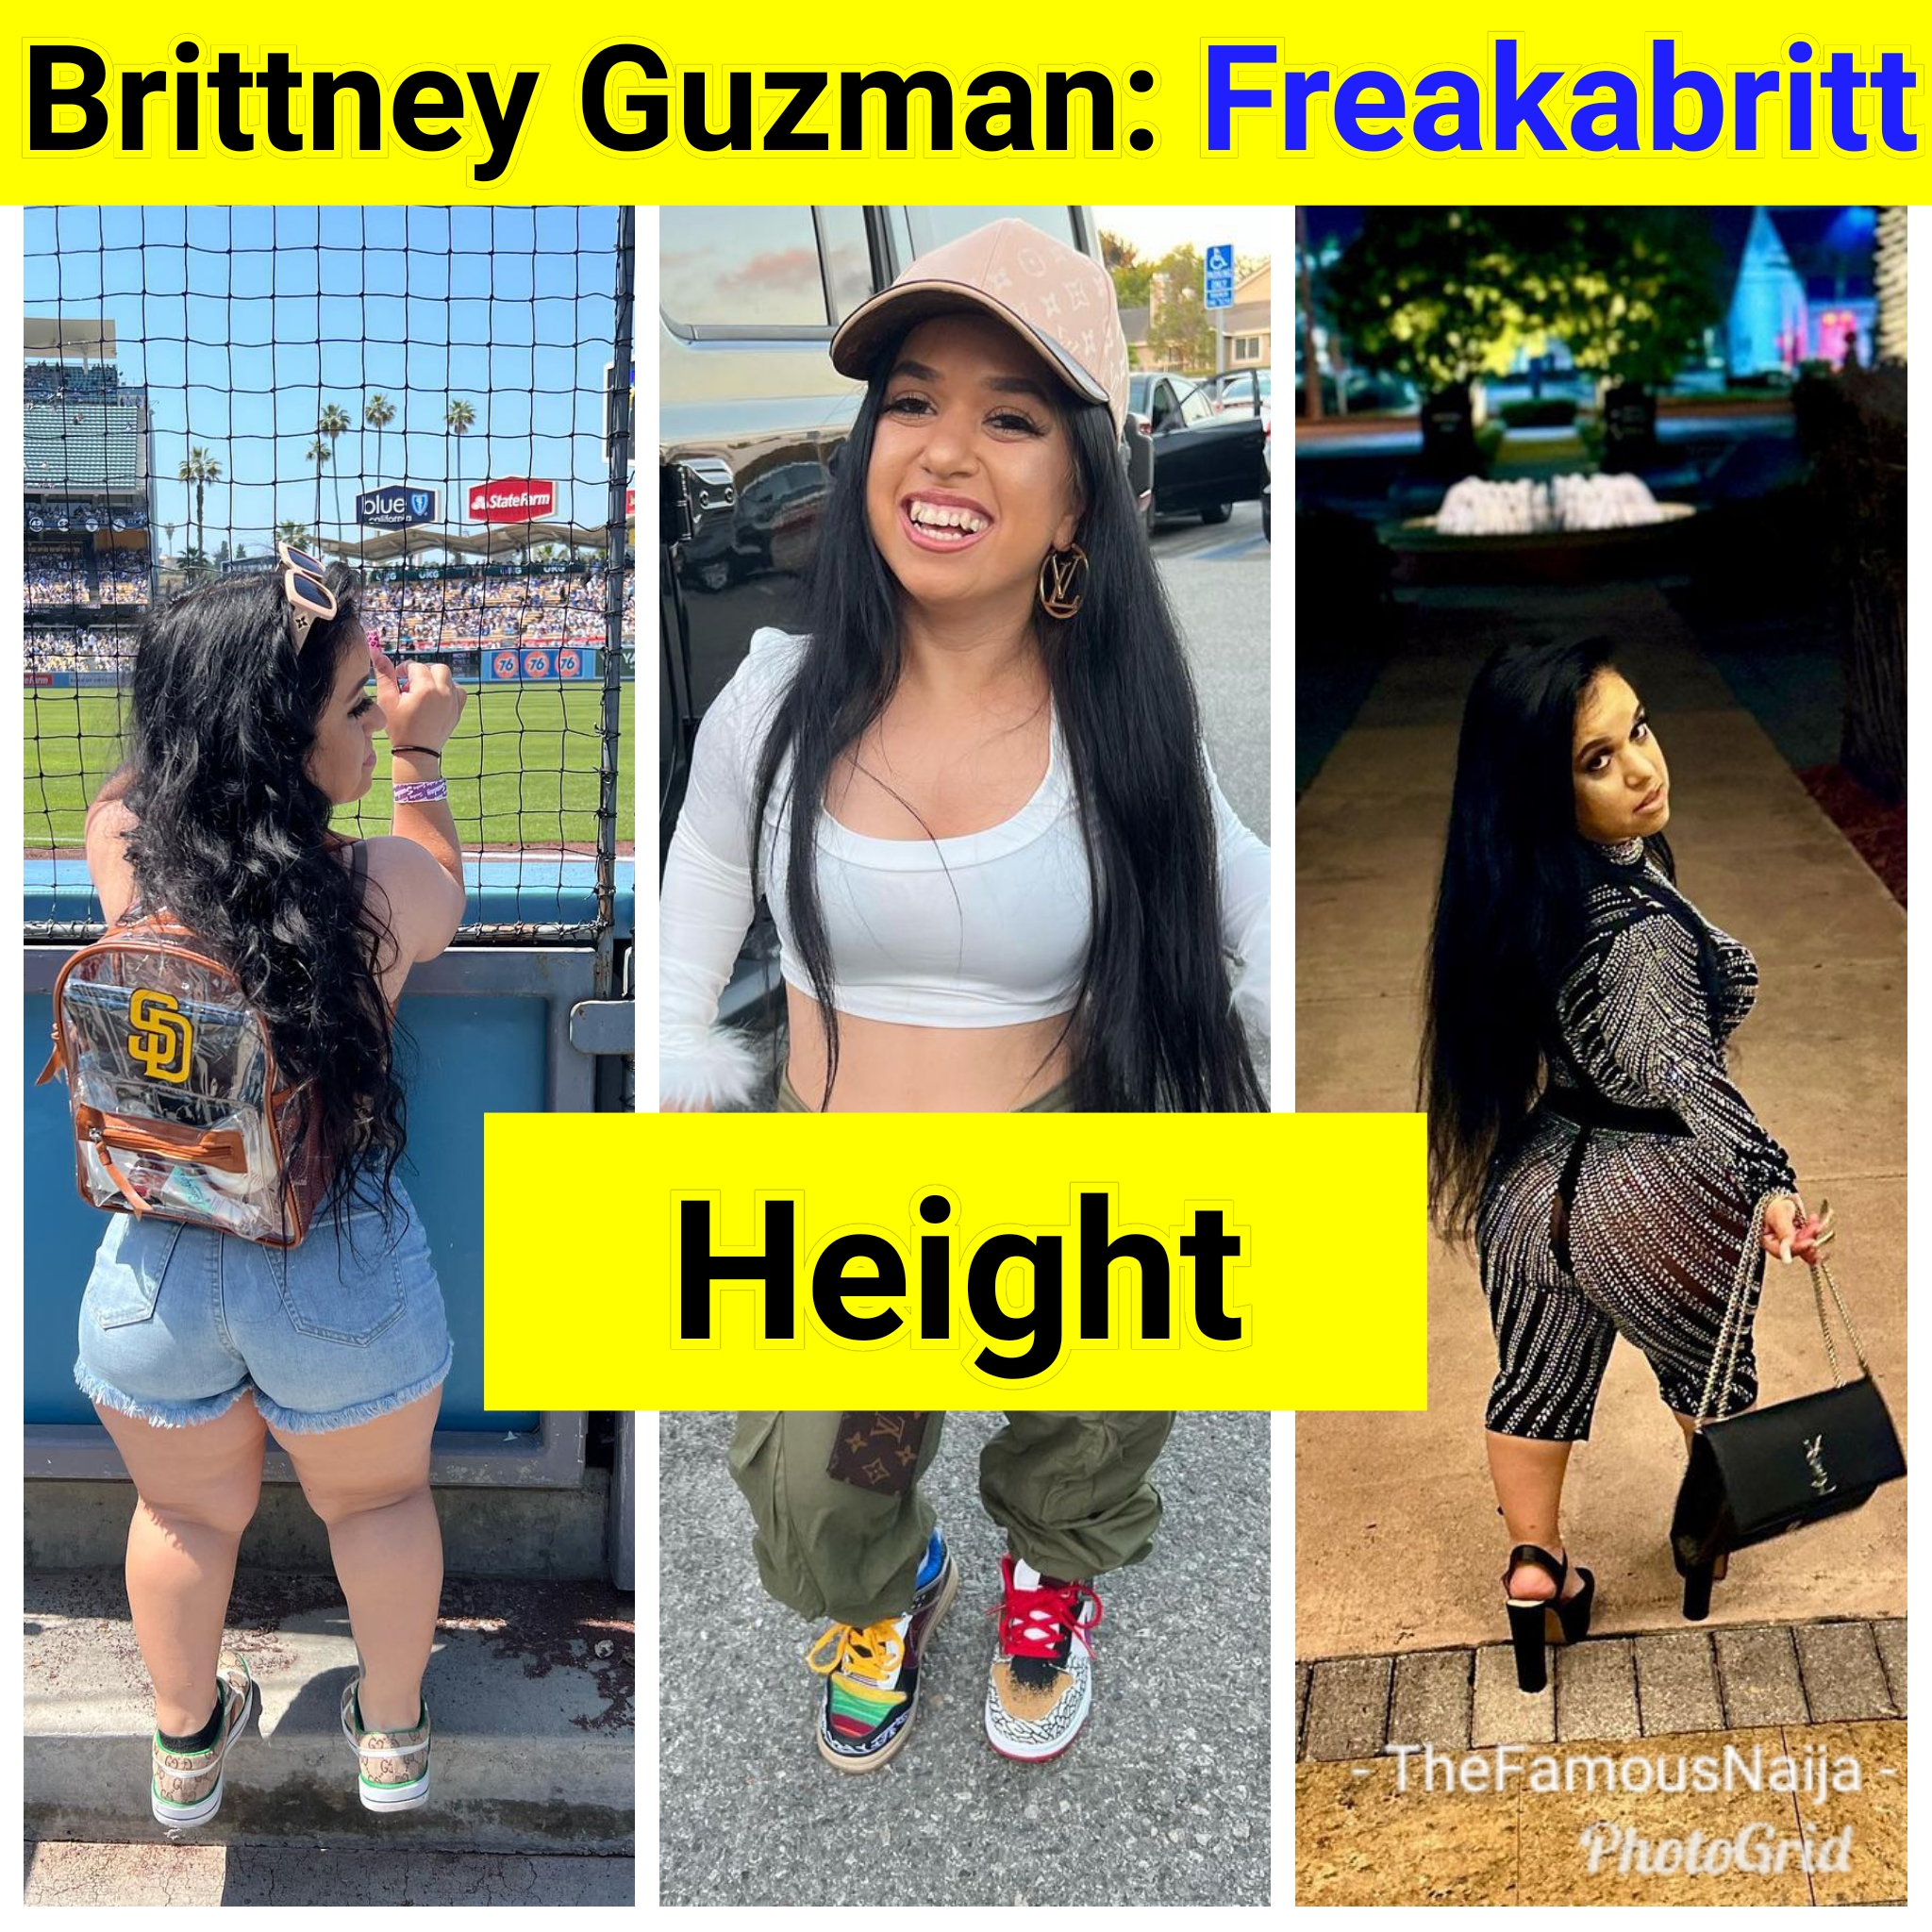 Brittney Guzman (Freakabritt) Biography, Age, Pictures, Height, Boyfriend,  Parents, Net Worth, Wikipedia